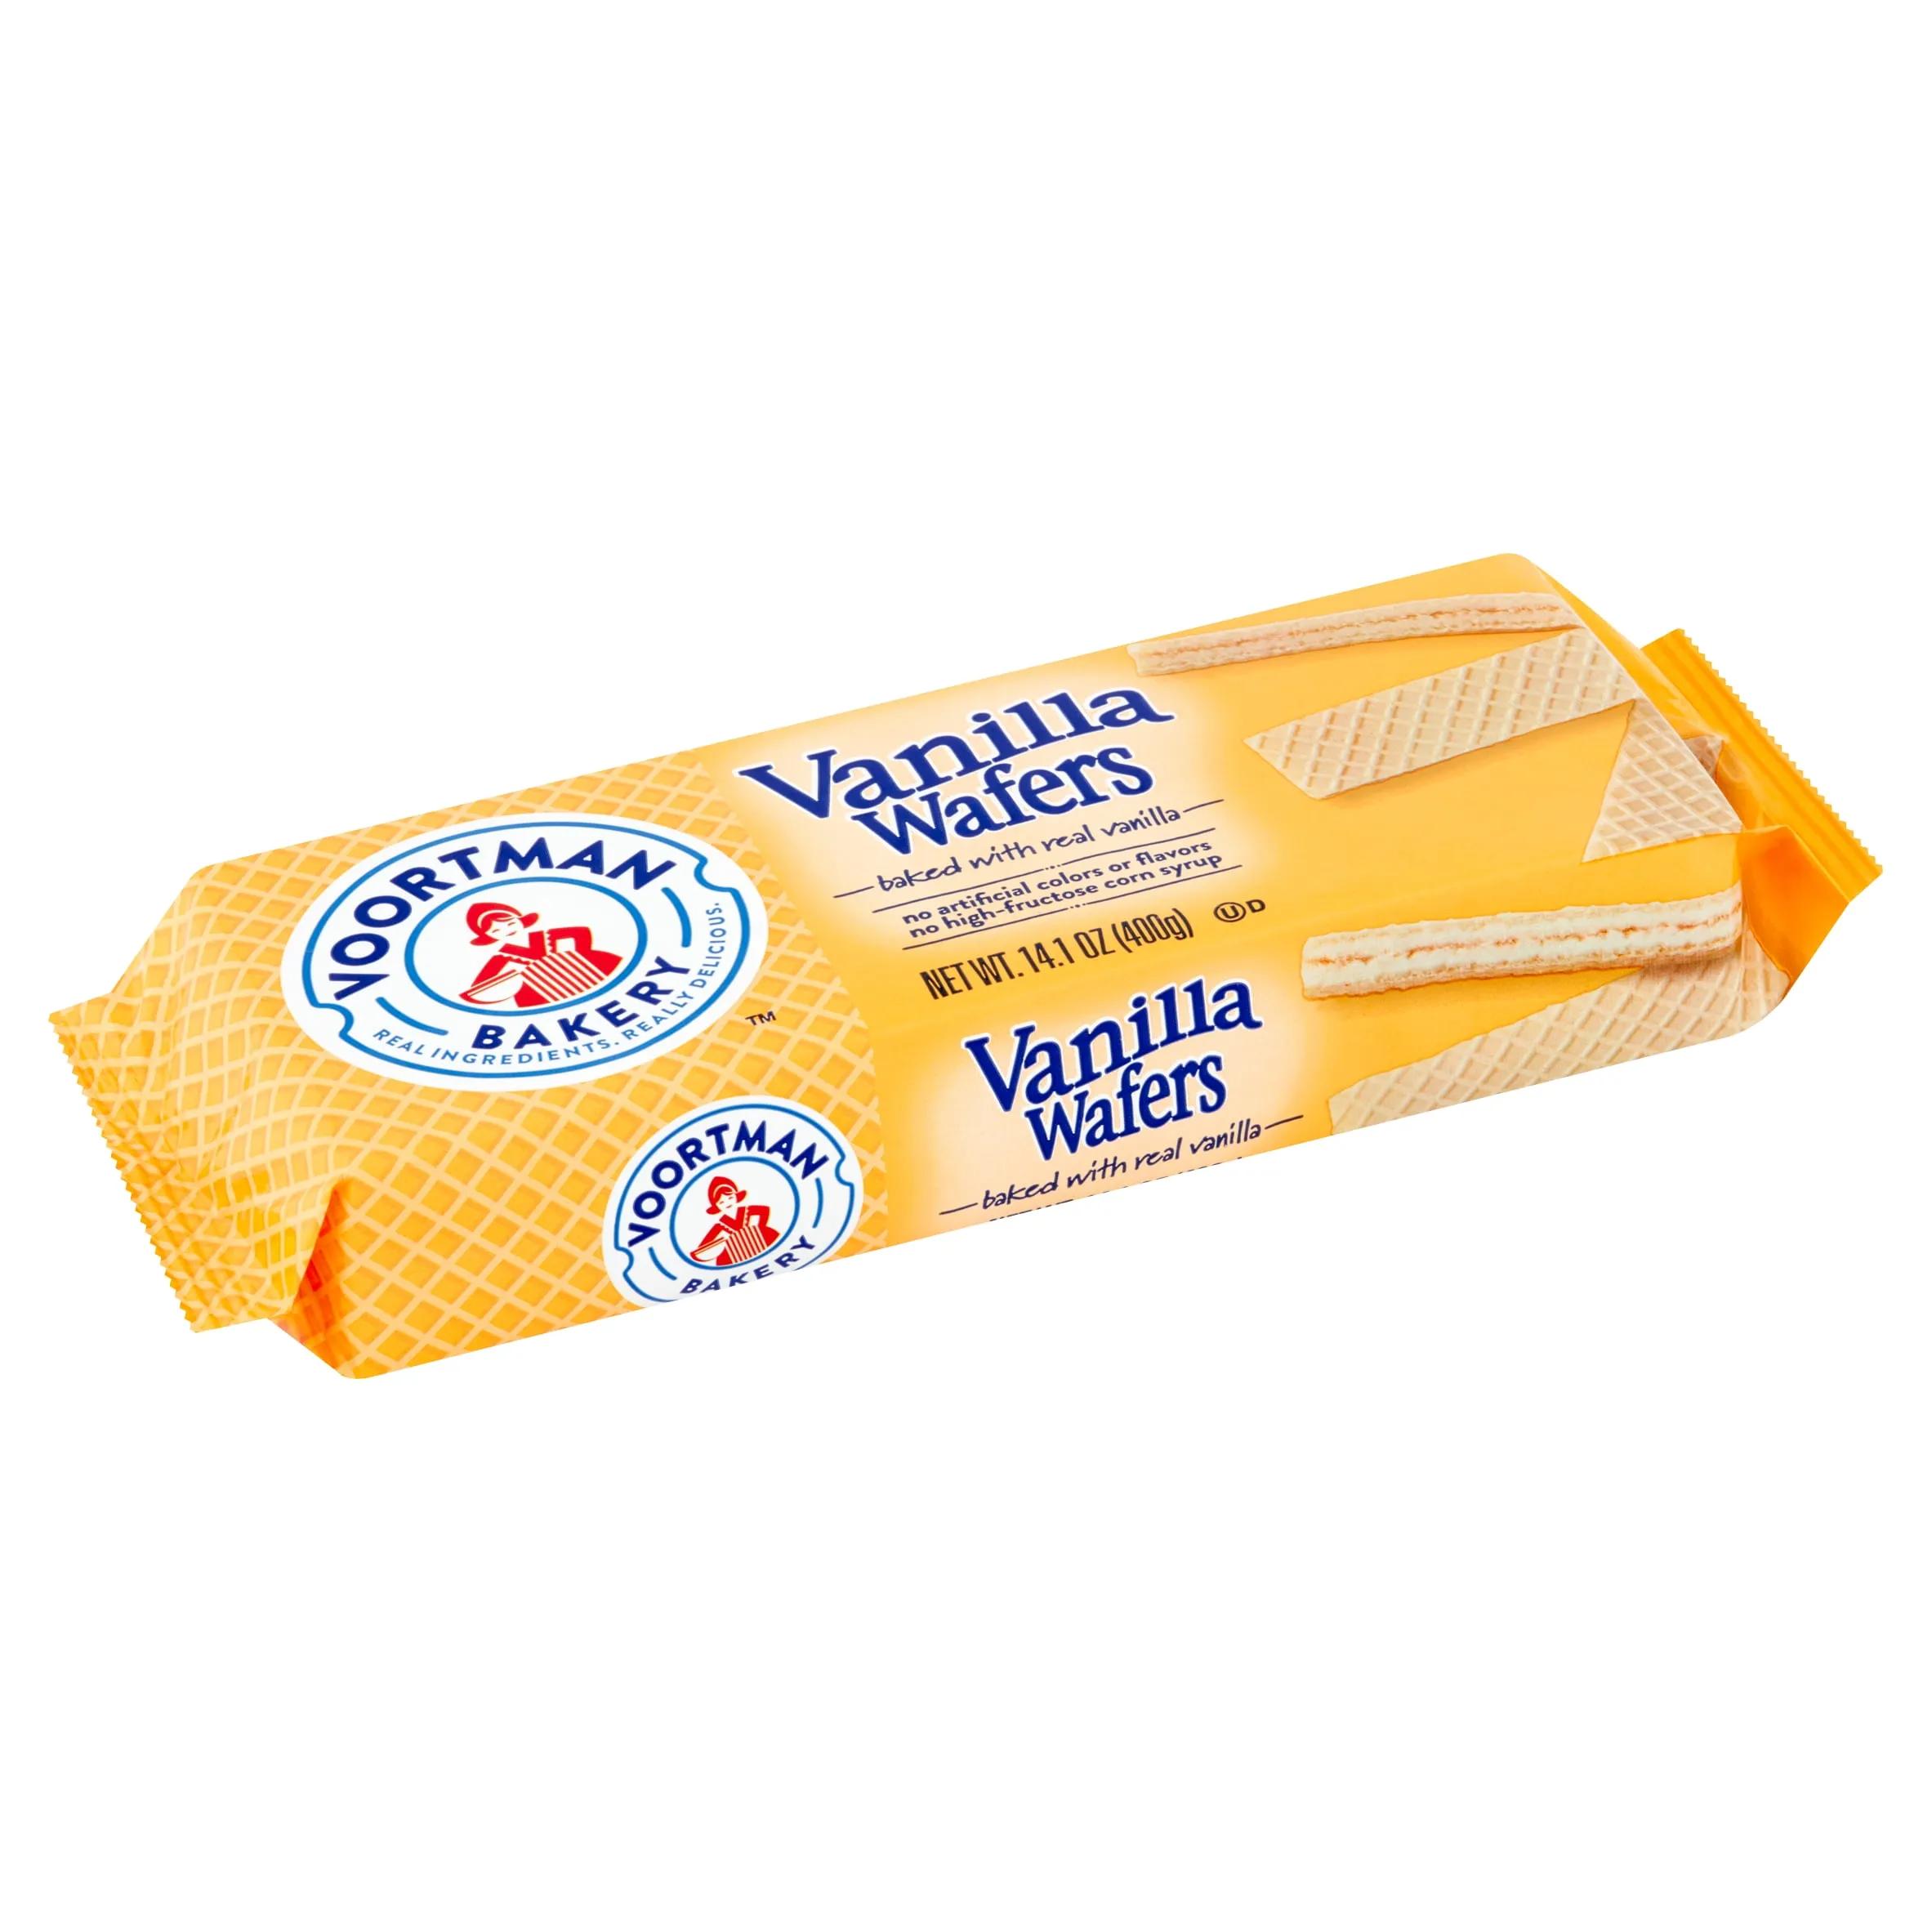 Voortman Bakery Vanilla Wafers, 14.1 oz - Walmart.com